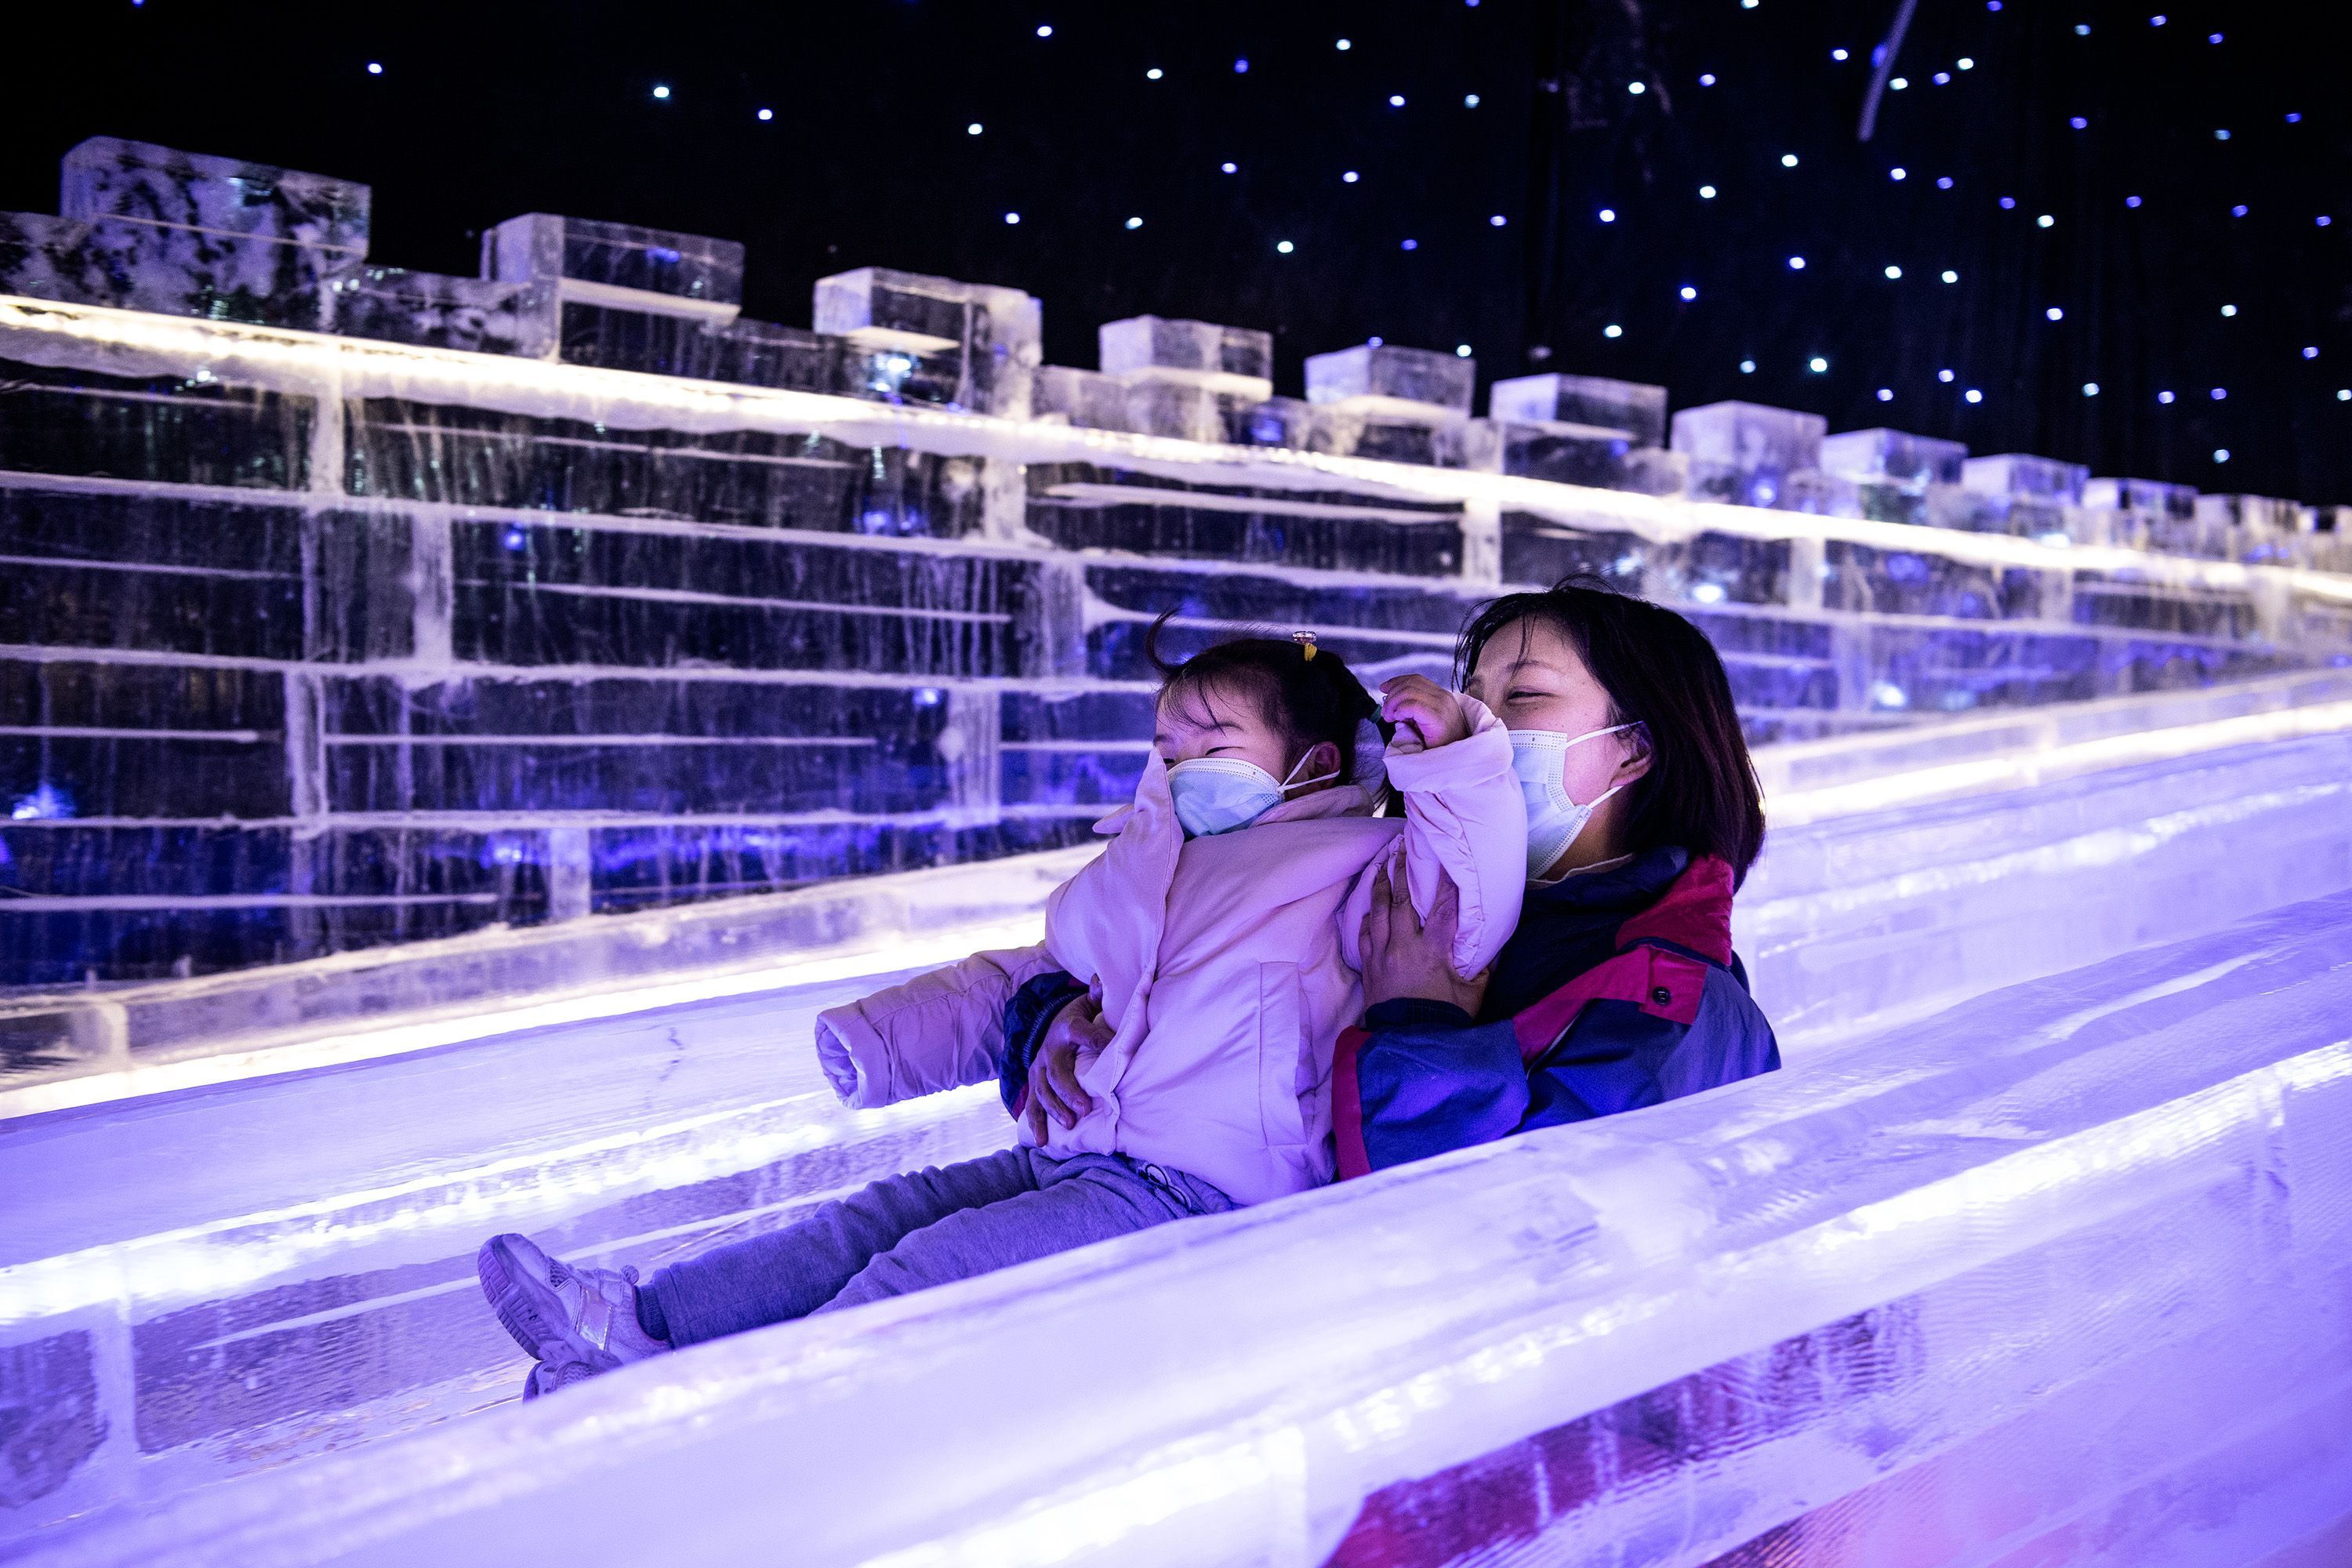 冰雪节开幕了!不用去哈尔滨,家门口就能体验冰雪魔幻世界